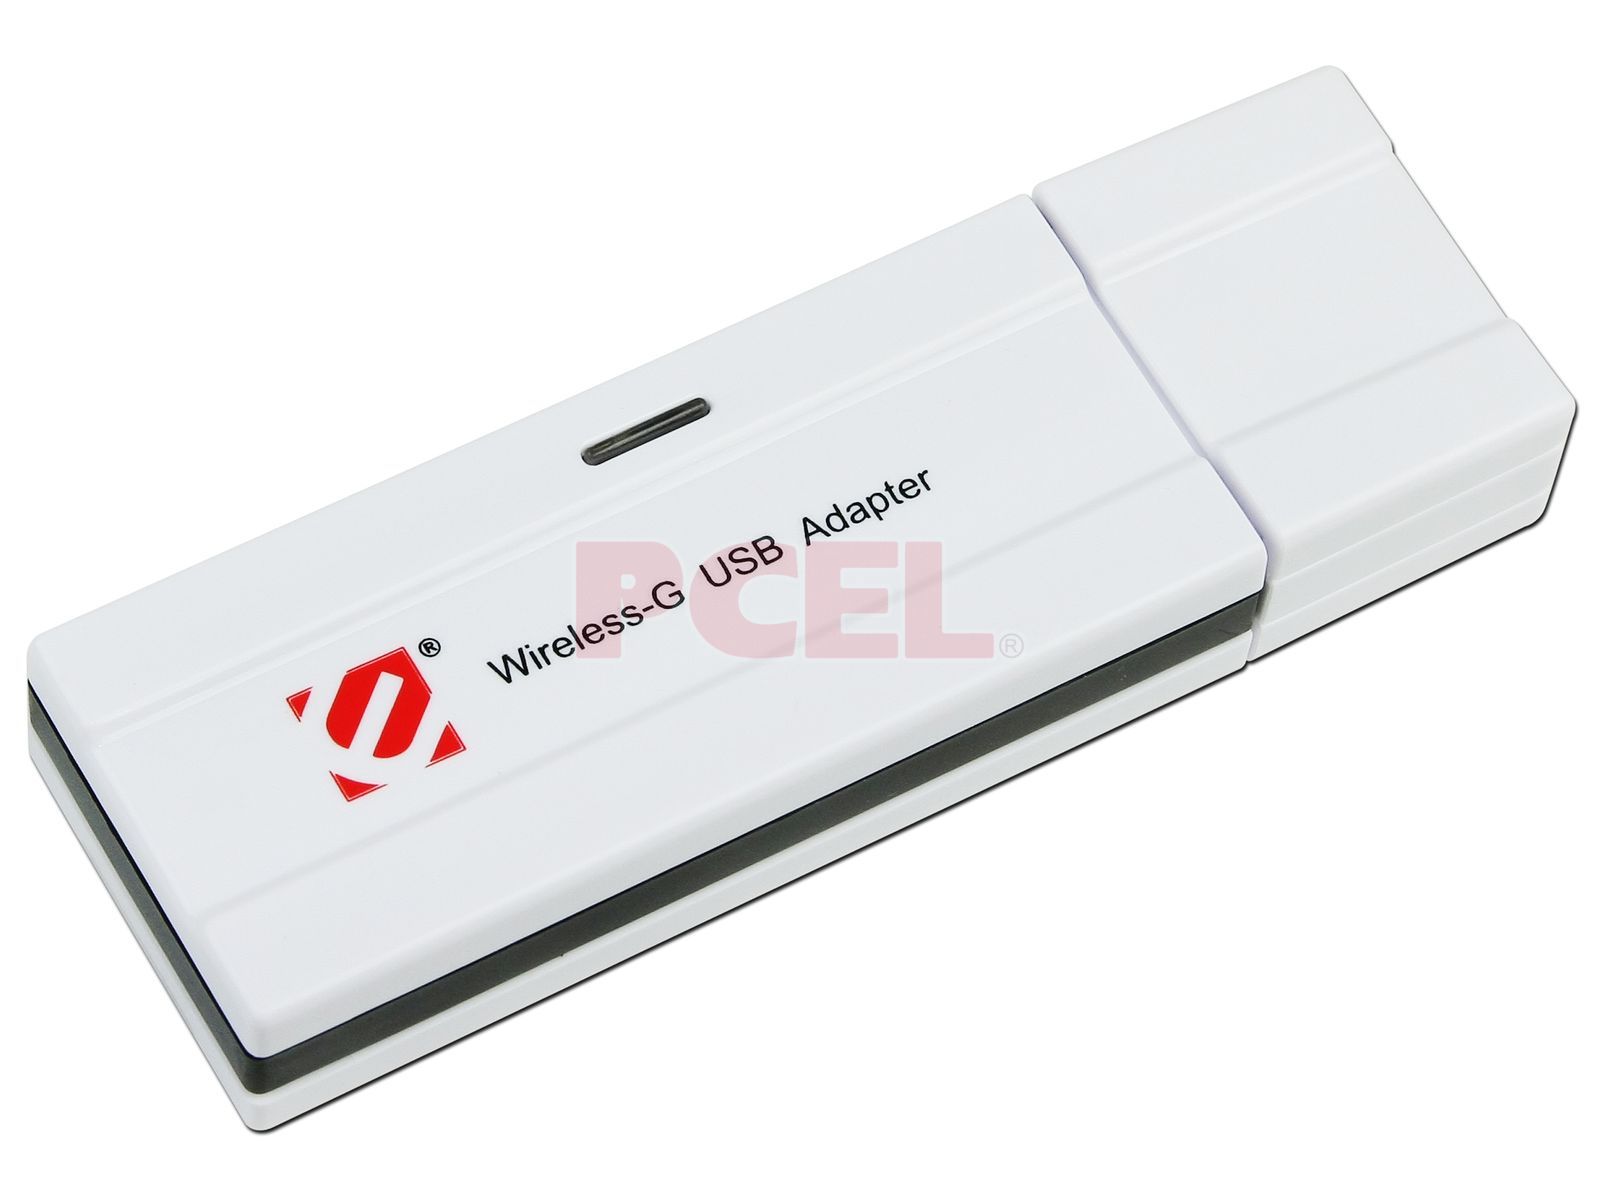 Драйвер для USB WIFI адаптера. Внешний USB Wi-Fi адаптер. Wi-Fi USB-адаптер Star track ( для тюнеров ). Dream Tech Wi-Fi адаптер. Драйверов usb адаптера wireless